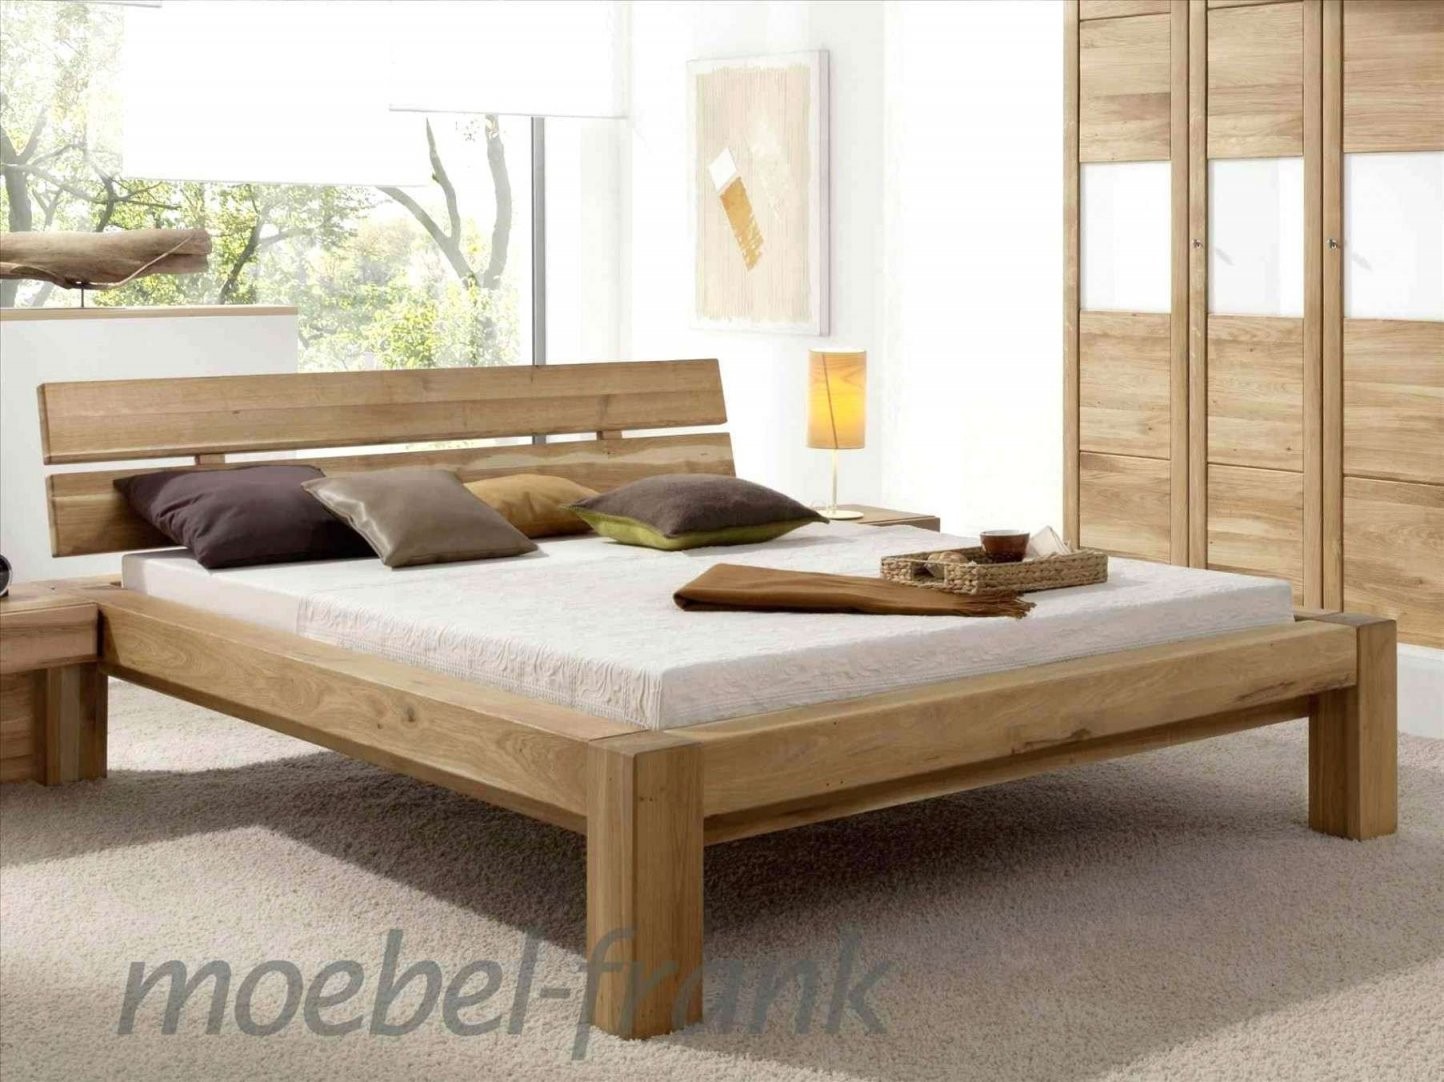 Doppelbett Gebraucht Neu Bett Selber Bauen Holz Best Selbst Haus von Bett Aus Holz Selber Bauen Photo